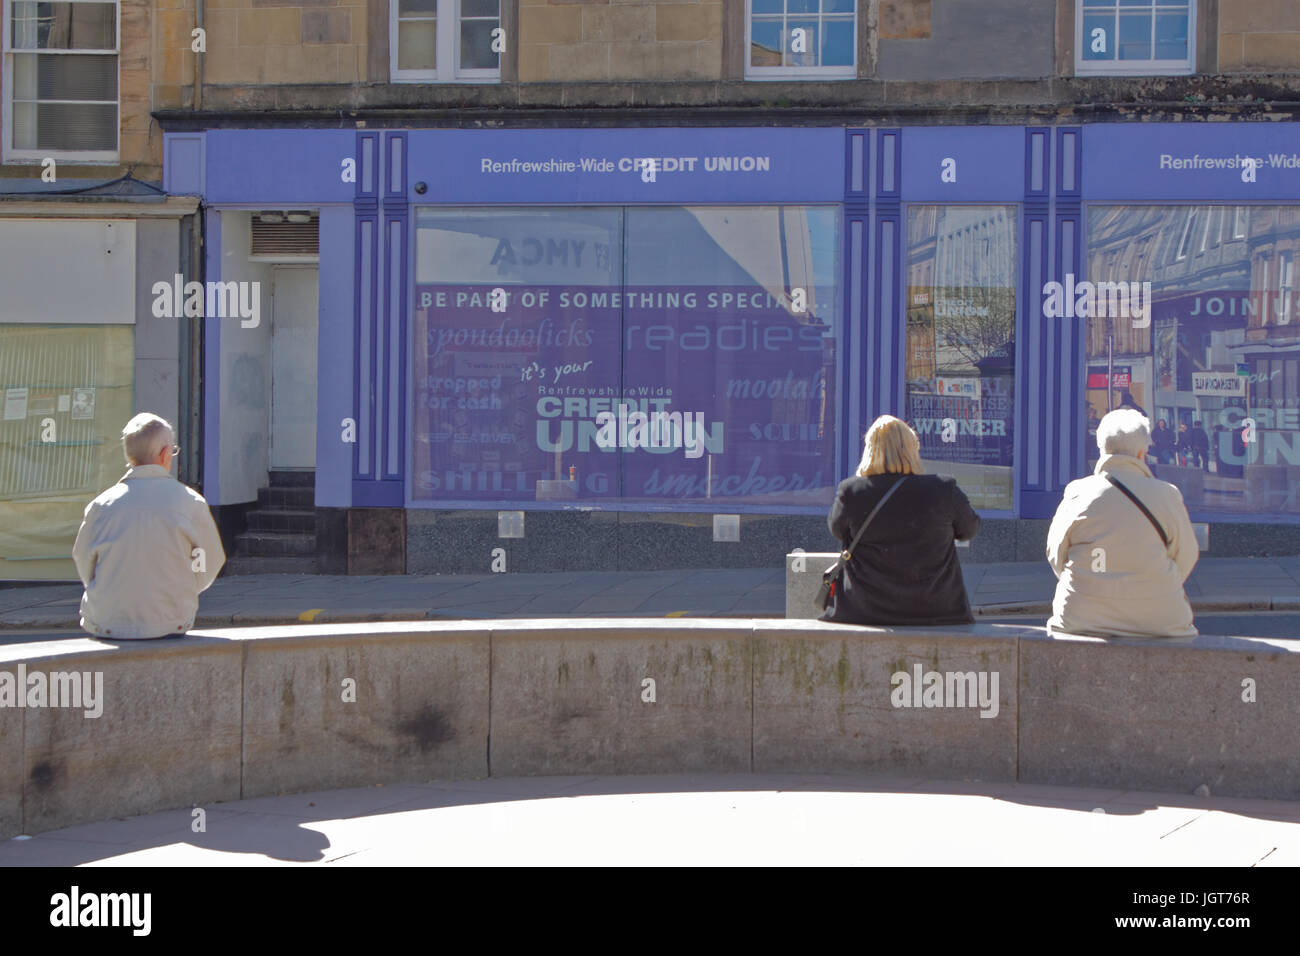 Paisley Scozia buddies su un banco in un posto molto soleggiato giorno, la high street di fronte al locale unione di credito Foto Stock